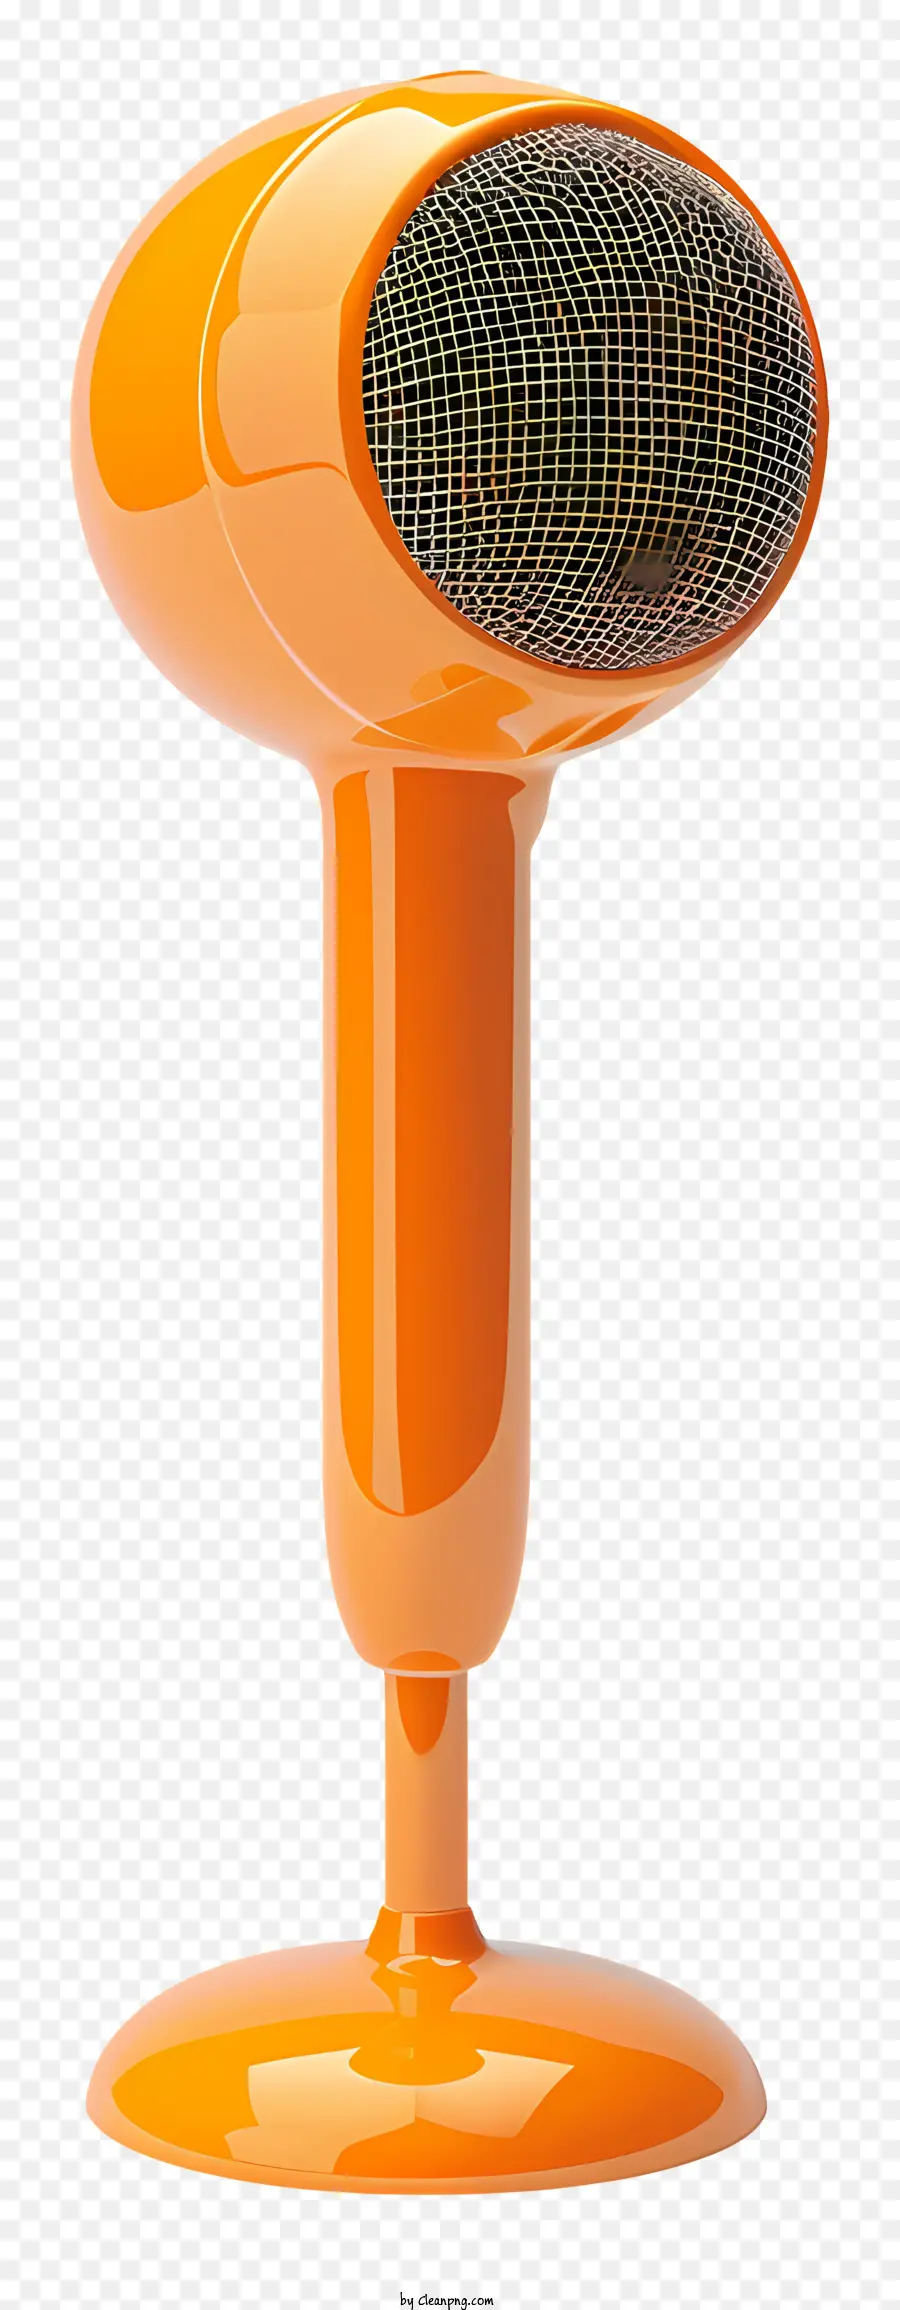 Sprach orange Wärmelampe Schwarze Basis auf einem Ständer zylindrisch - Orangefarbene Wärmelampe mit zylindrischem Emitter am Ständer